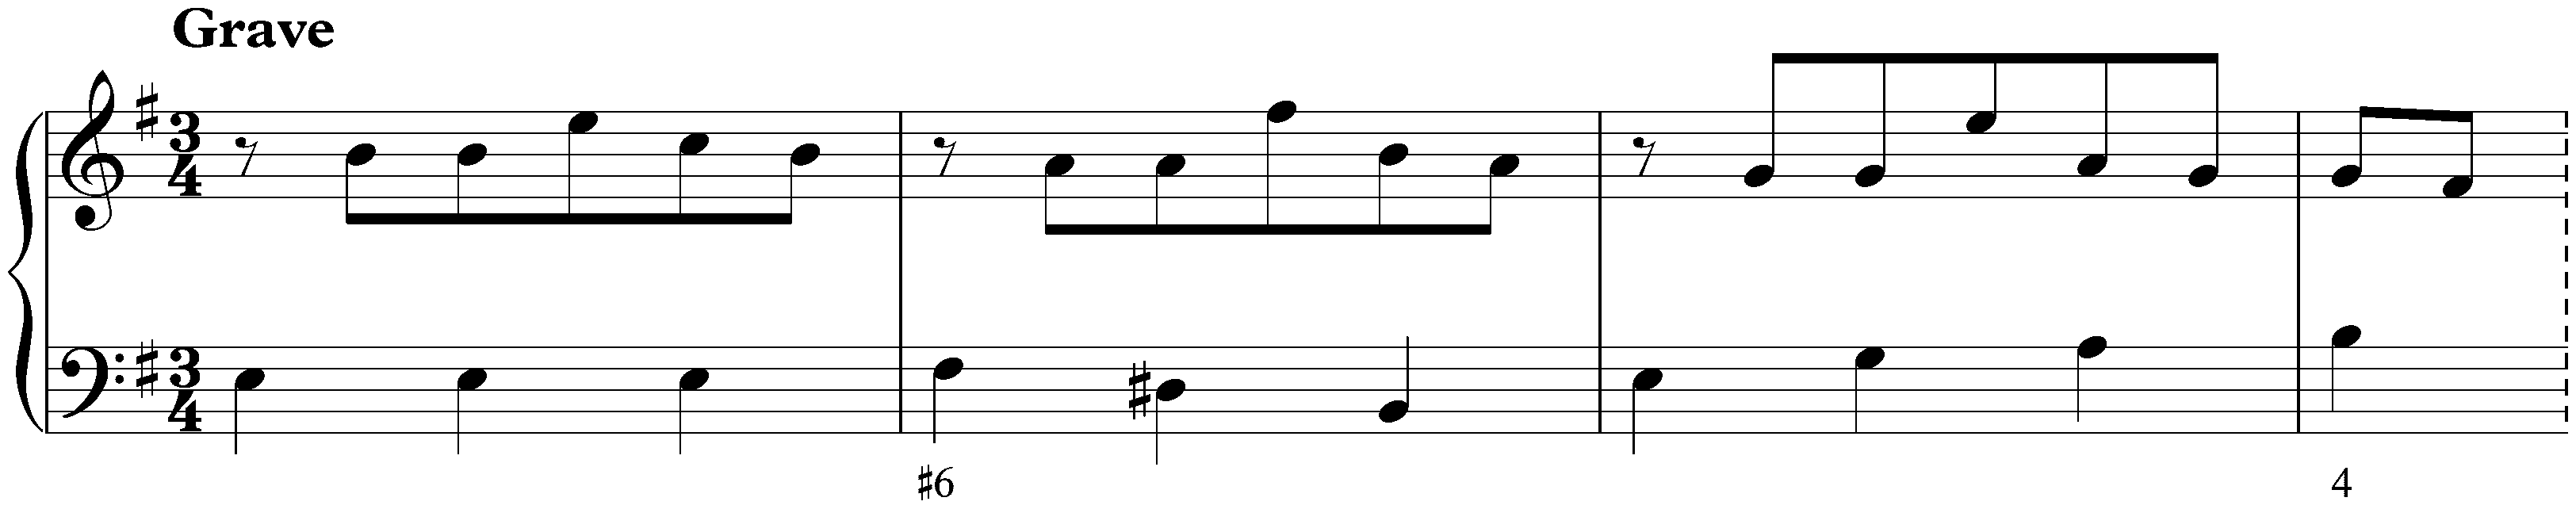 Sonata in E minor, K. 81; 3. Grave